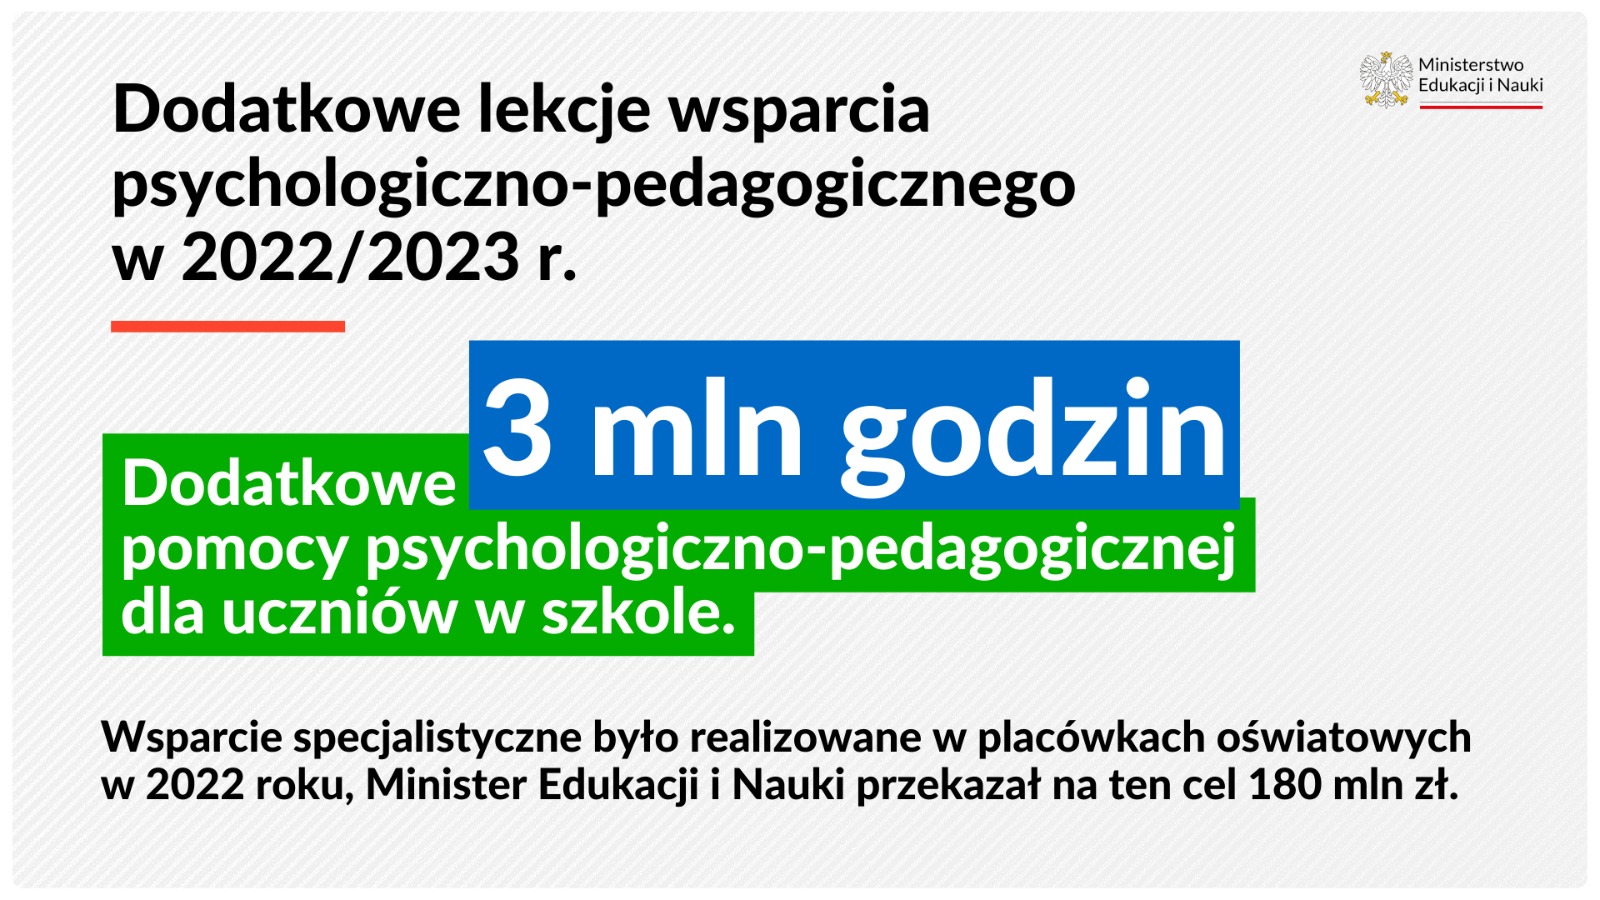 Dodatkowe lekcje wsparcia psychologiczno-pedagogicznego w 2022/2023 r. Dodatkowe 3 mln godzin pomocy psychologiczno-pedagogicznej dla uczniów w szkole.